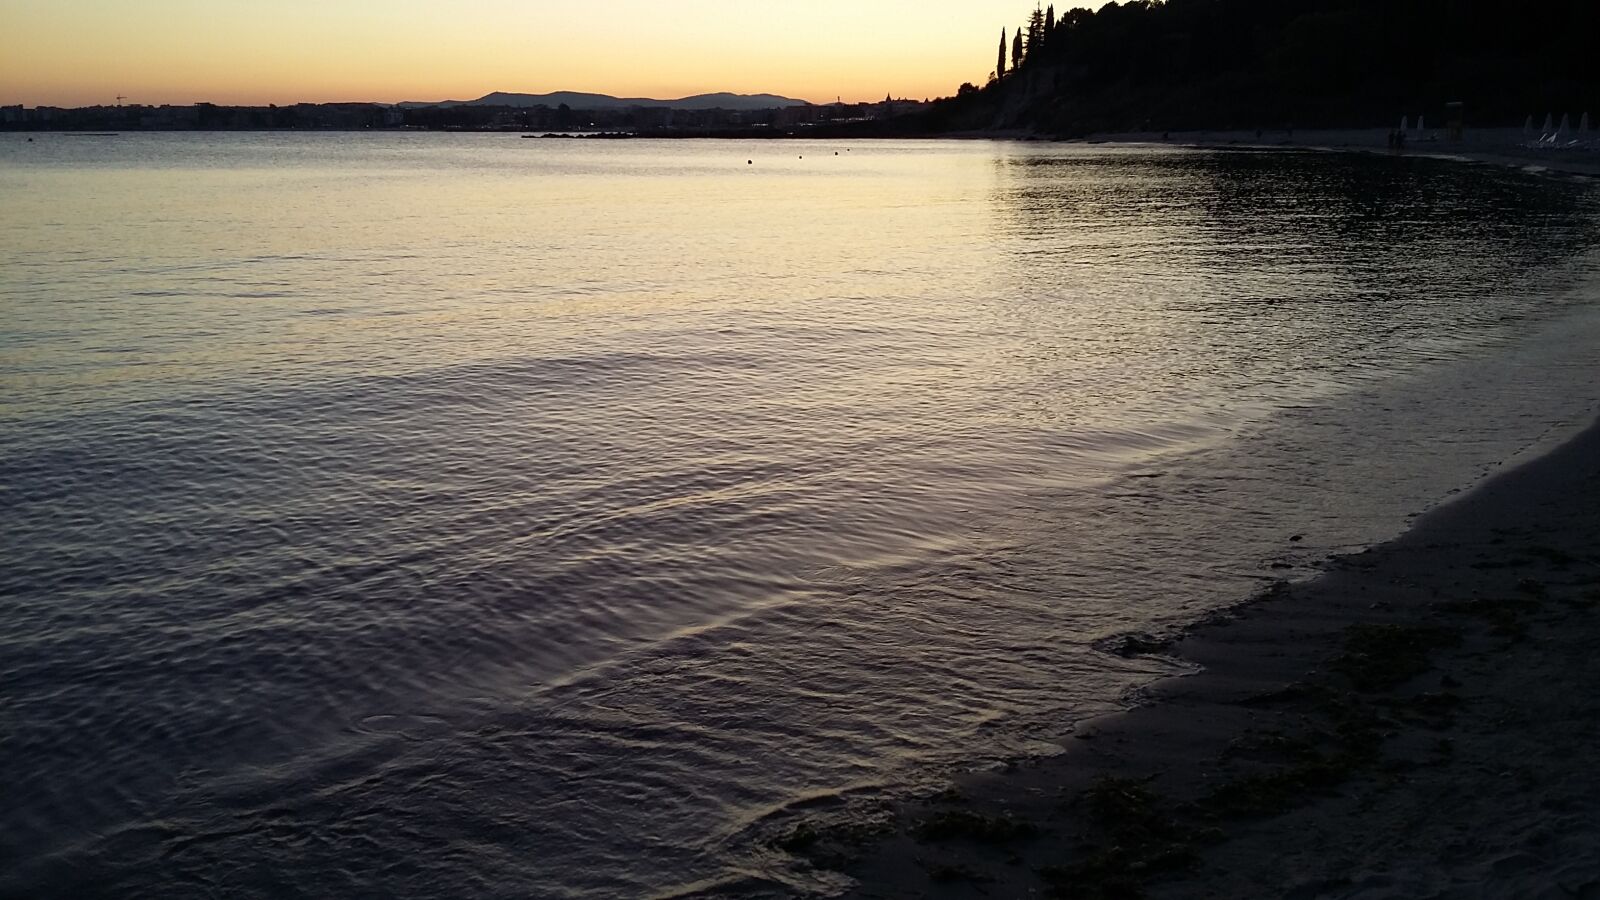 Samsung Galaxy A3 sample photo. Sea, bay, sunset photography